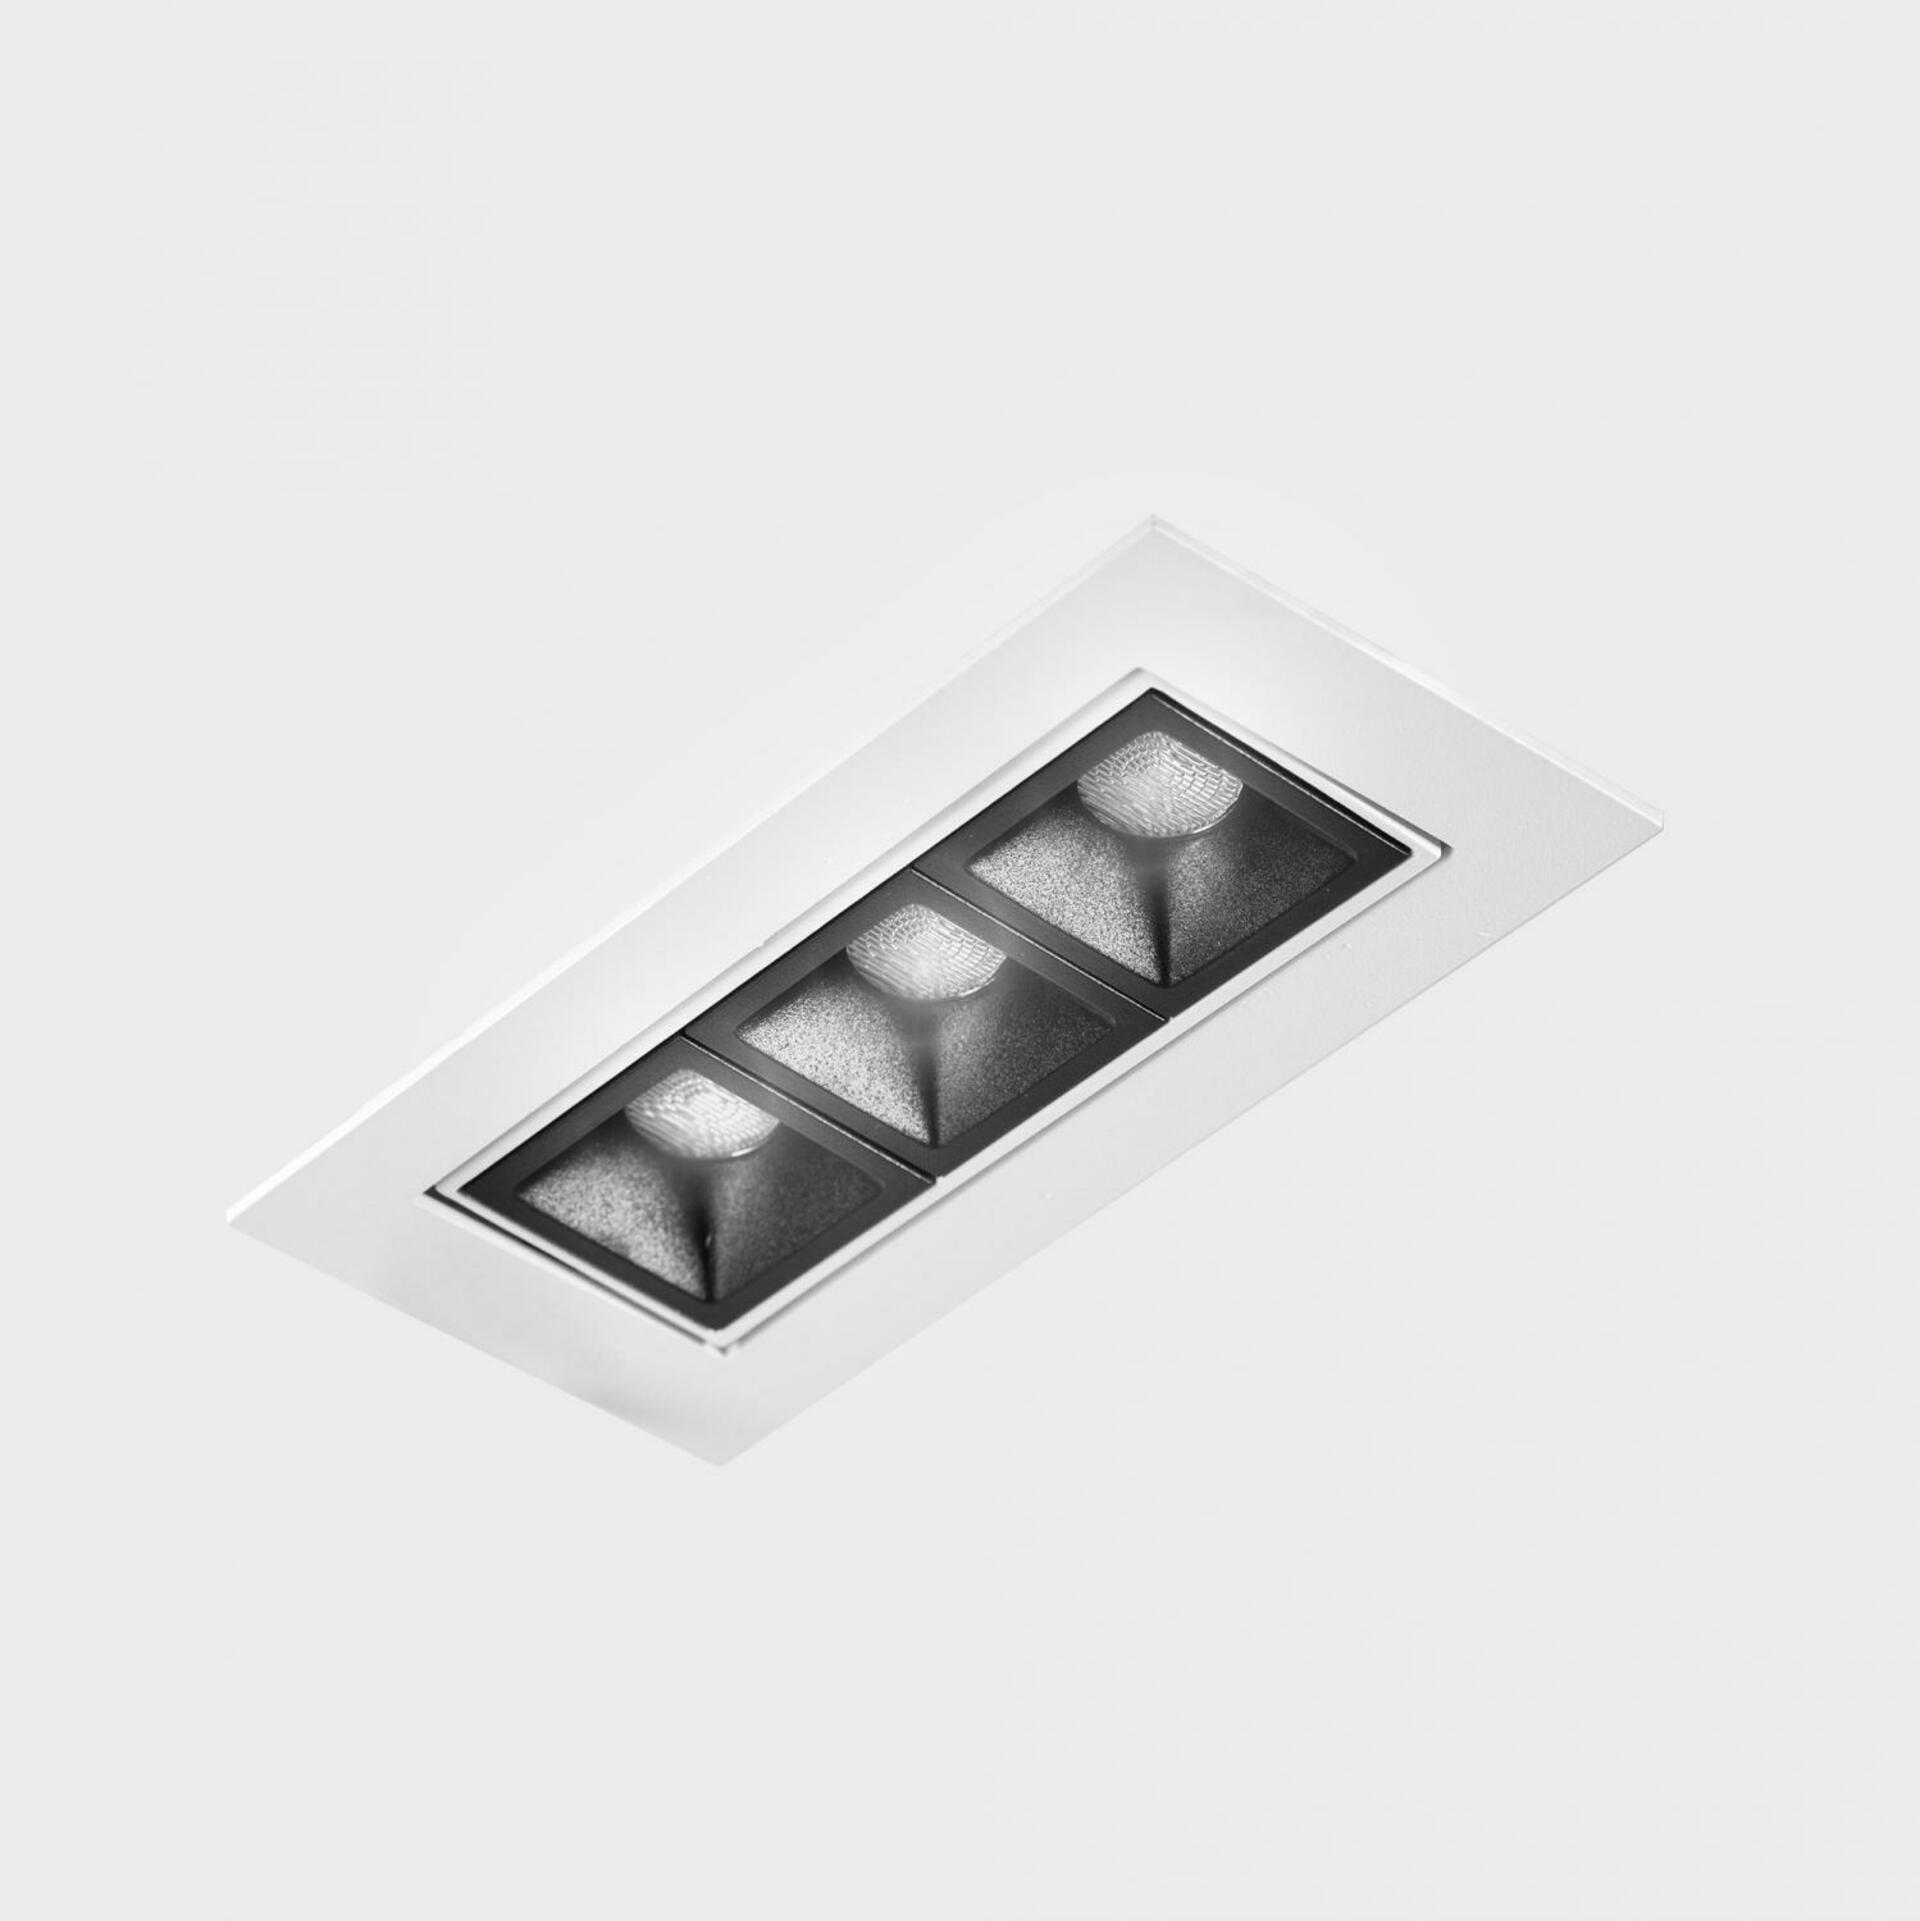 KOHL LIGHTING KOHL-Lighting NSES TILT zapuštěné svítidlo s rámečkem 123x58 mm bílá-černá 6 W CRI 90 4000K DALI